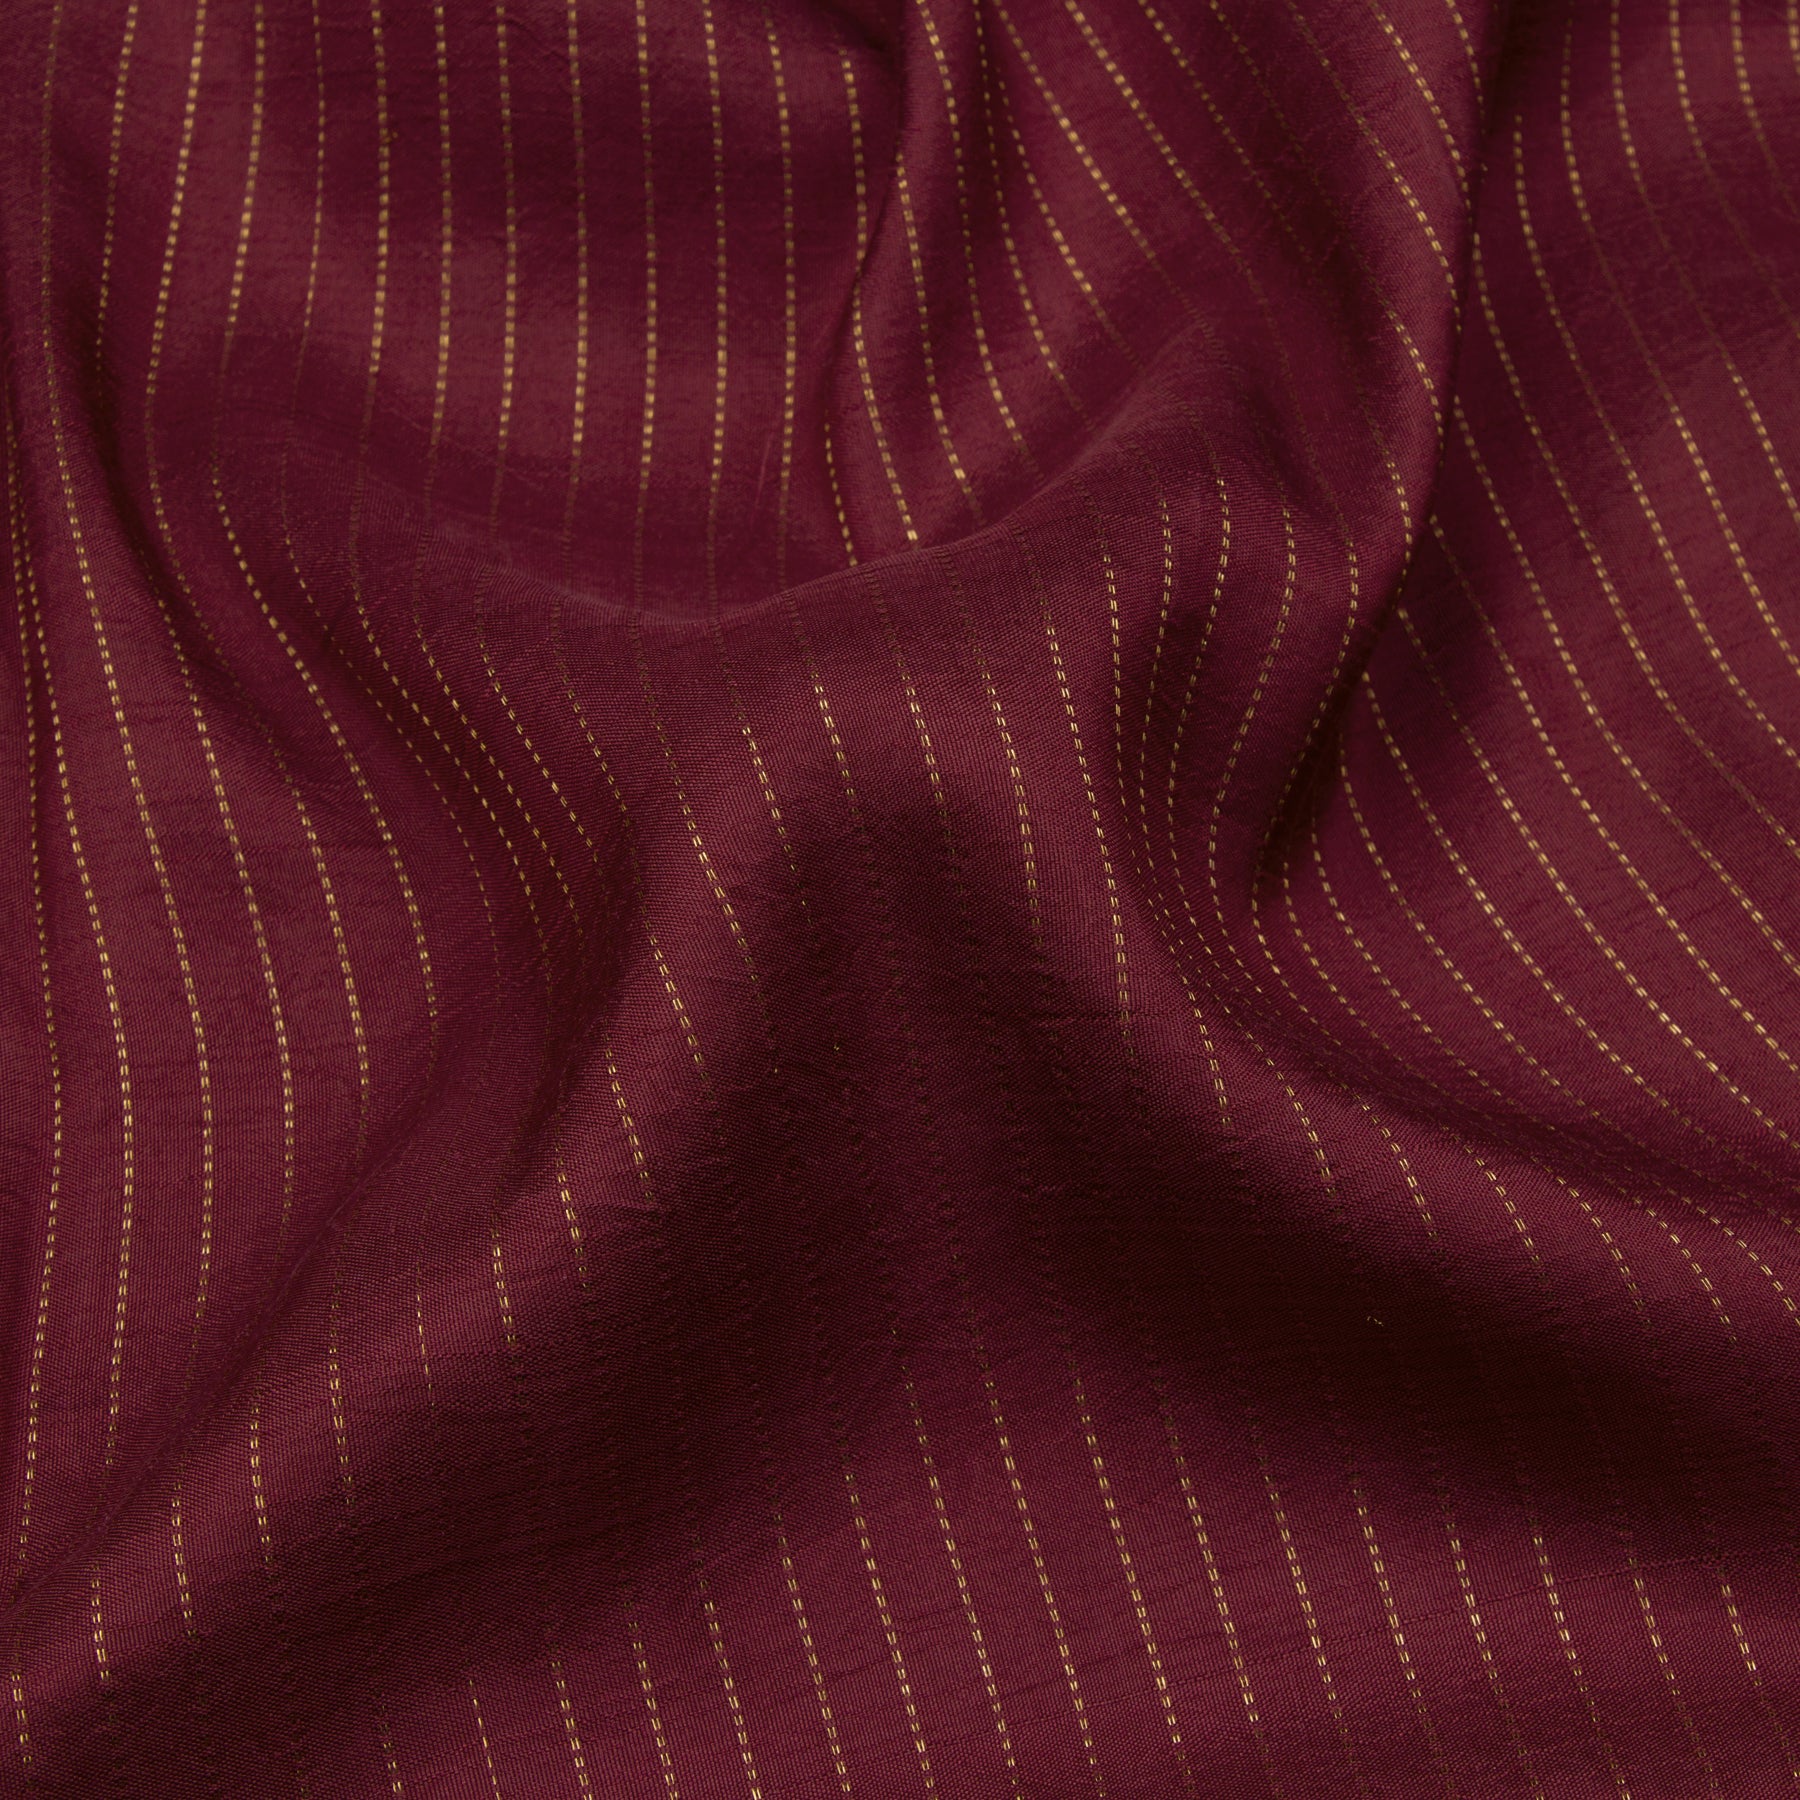 Kanakavalli Kanjivaram Silk Sari 21-601-HS001-01948 - Fabric View